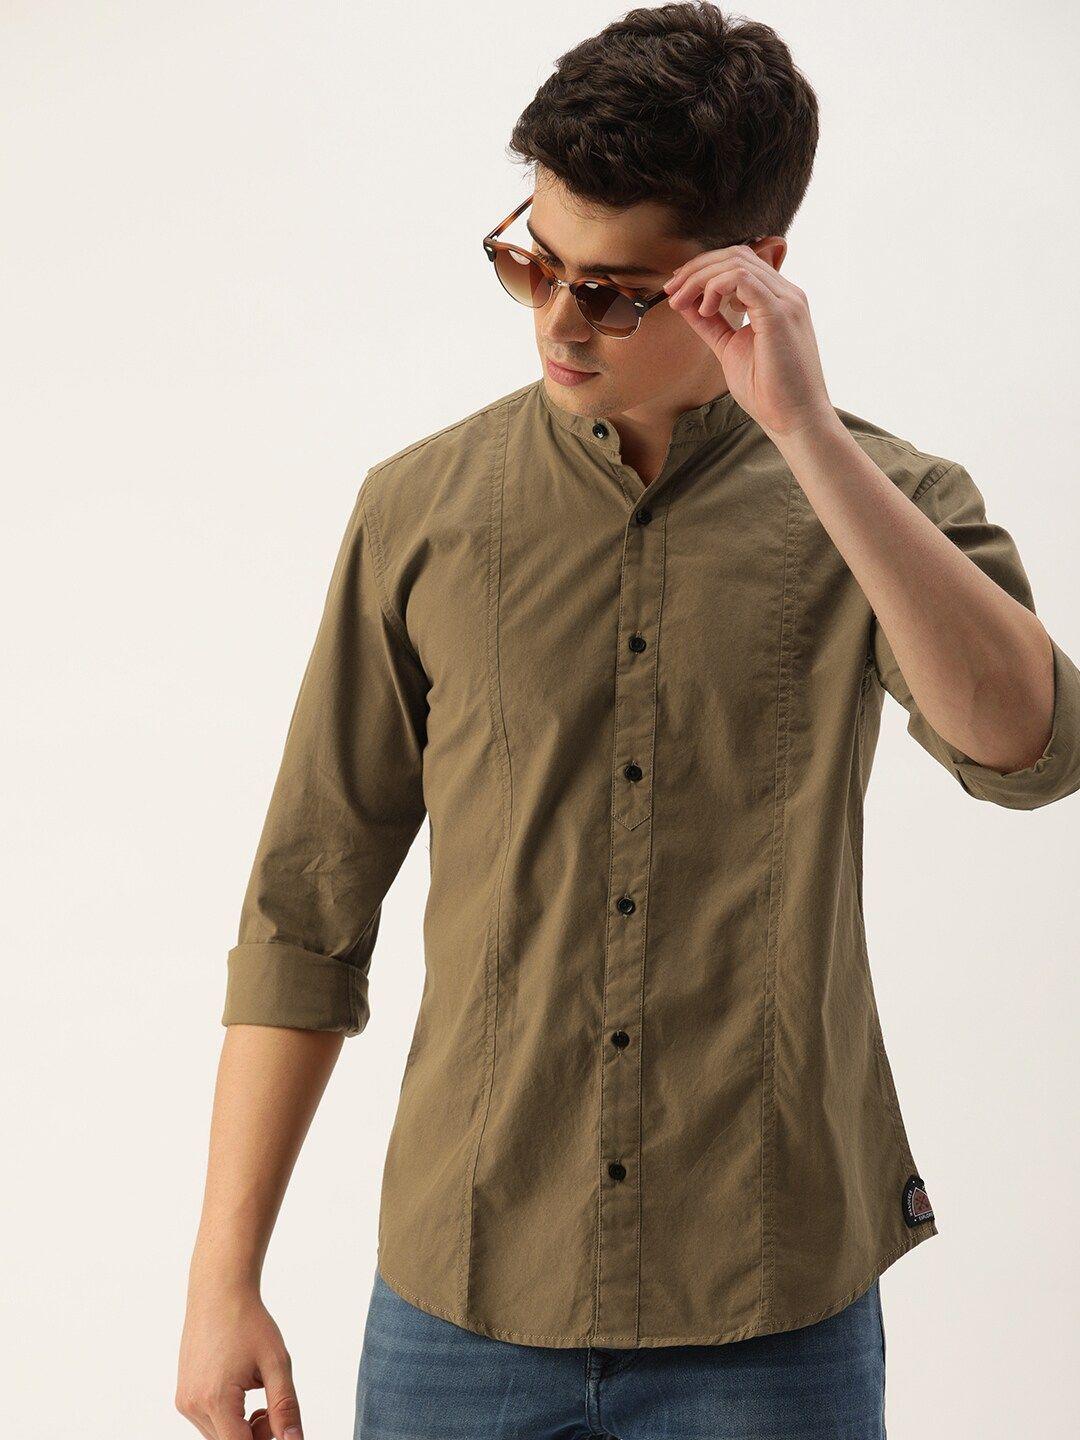 ivoc-men-standard-slim-fit-pure-cotton-casual-shirt